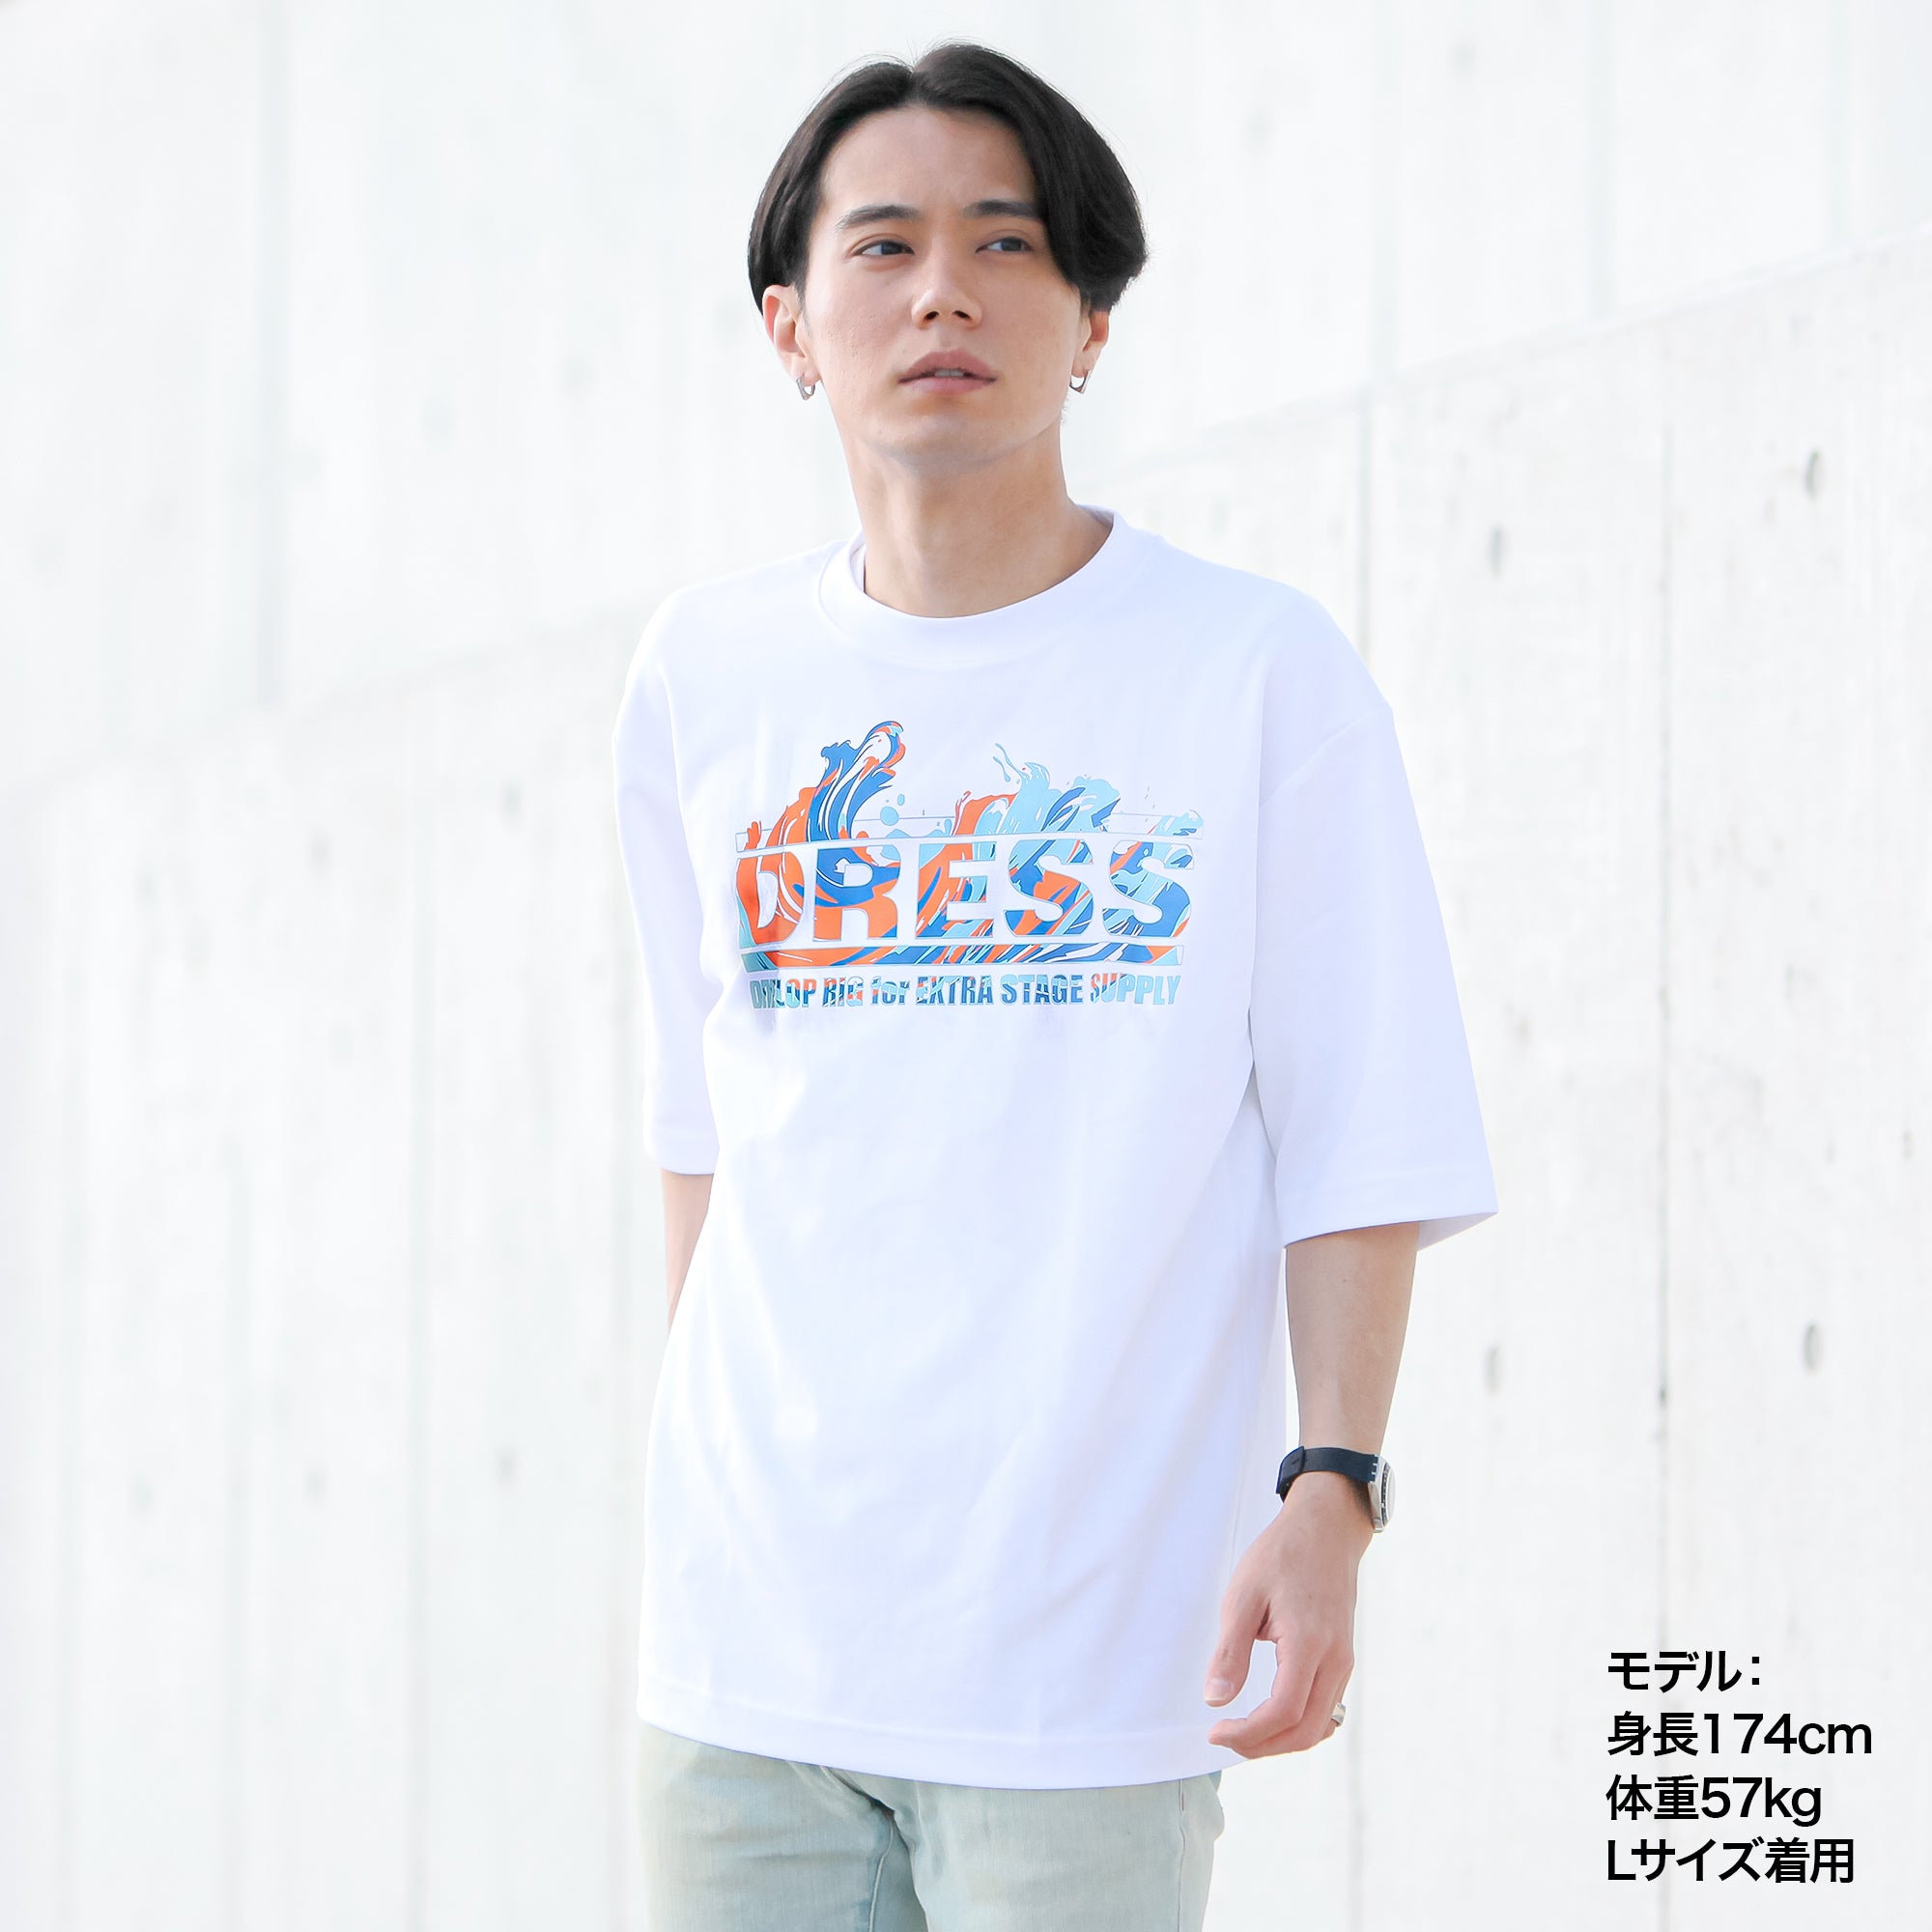 DRESS オーバーサイズ Tシャツ【ホワイト】